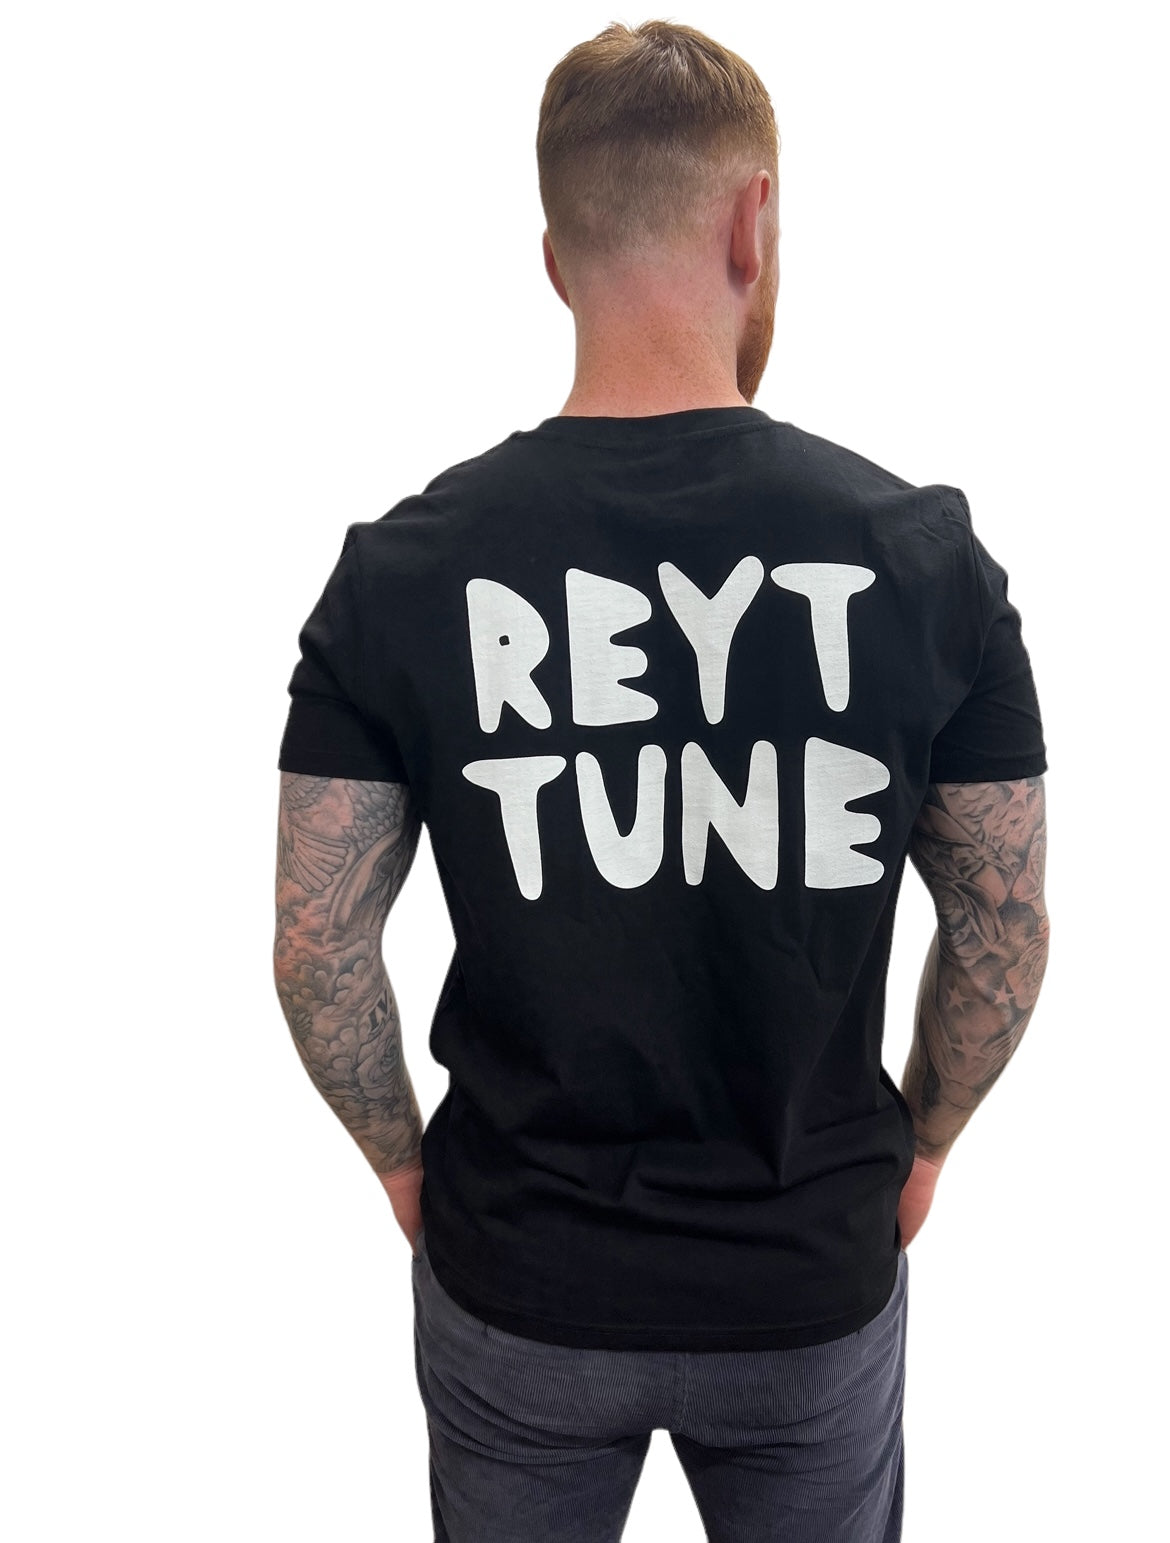 Reyt Tune - Festival Unisex T-Shirt - Luke Horton